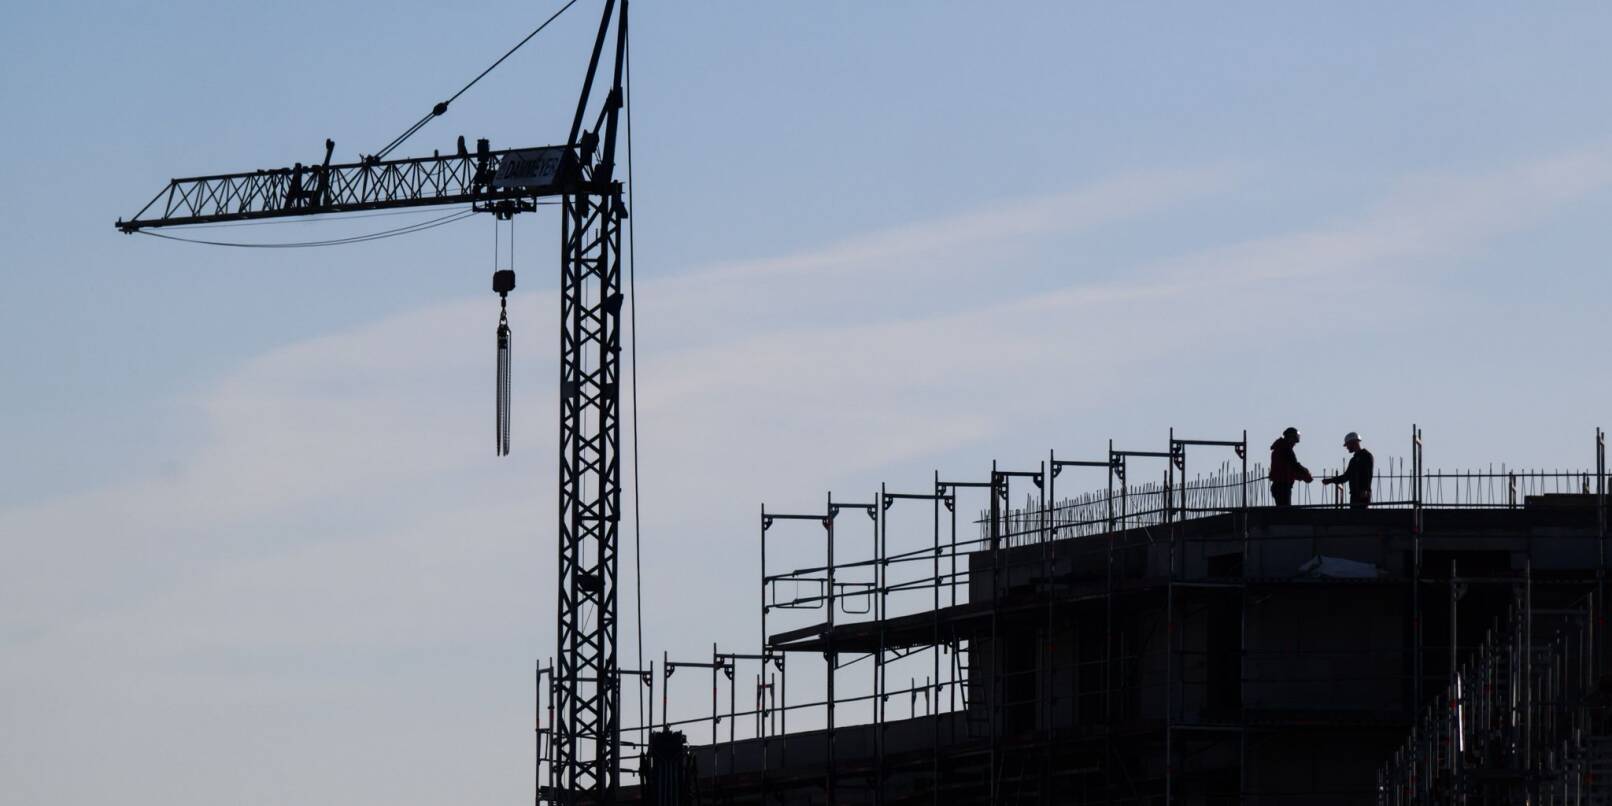 «Sicherheit auf den Baustellen muss oberste Priorität haben», fordert IG-Bau-Bundesvorsitzender Robert Feiger.